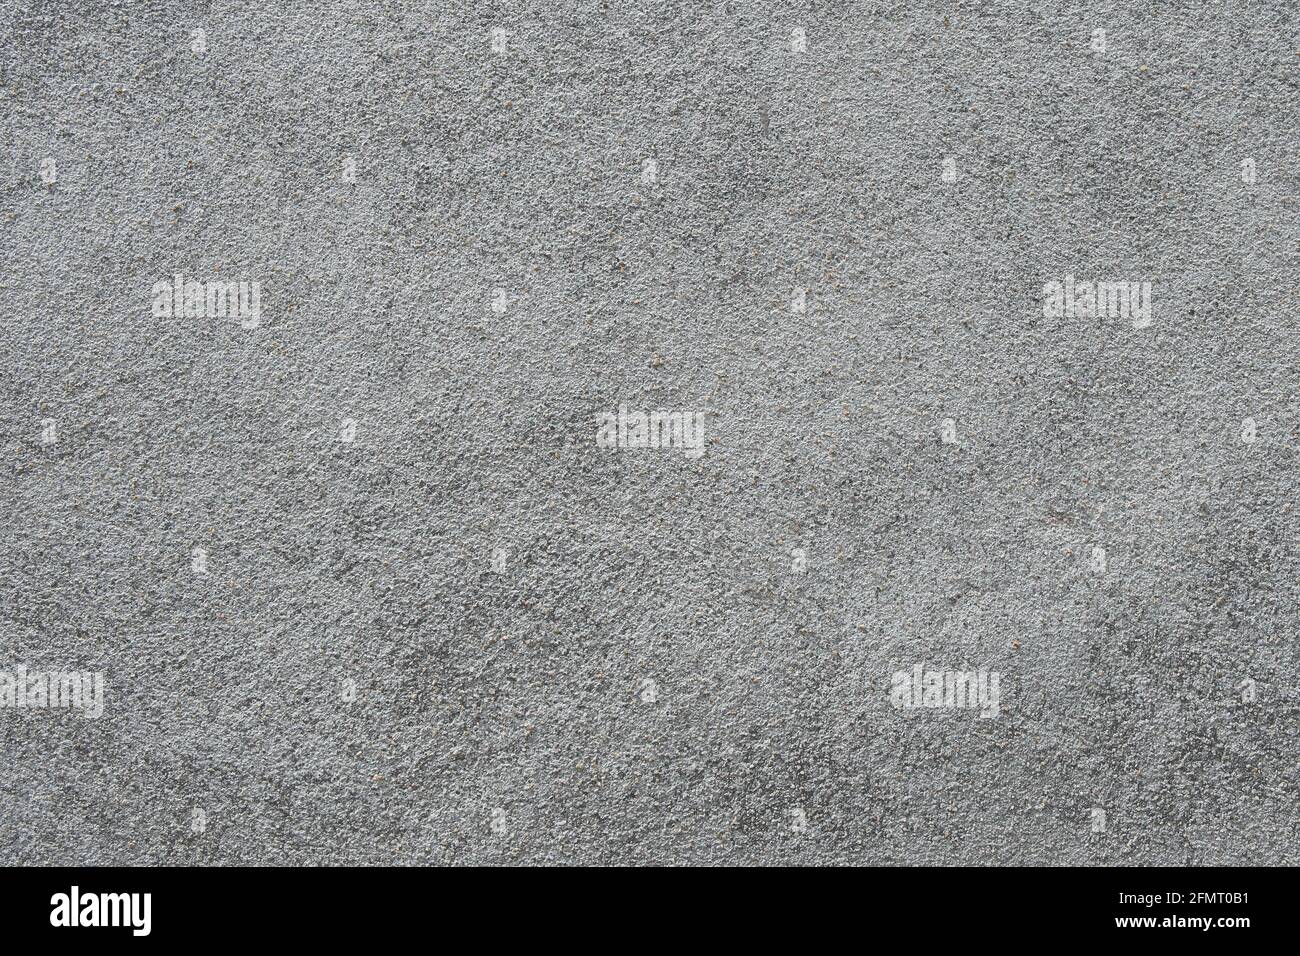 Die Textur einer grauen Oberfläche, die mit einer Mischung aus Sand und Zement bedeckt ist. Fertigstellung der Bauelemente. Selektiver Fokus. Stockfoto